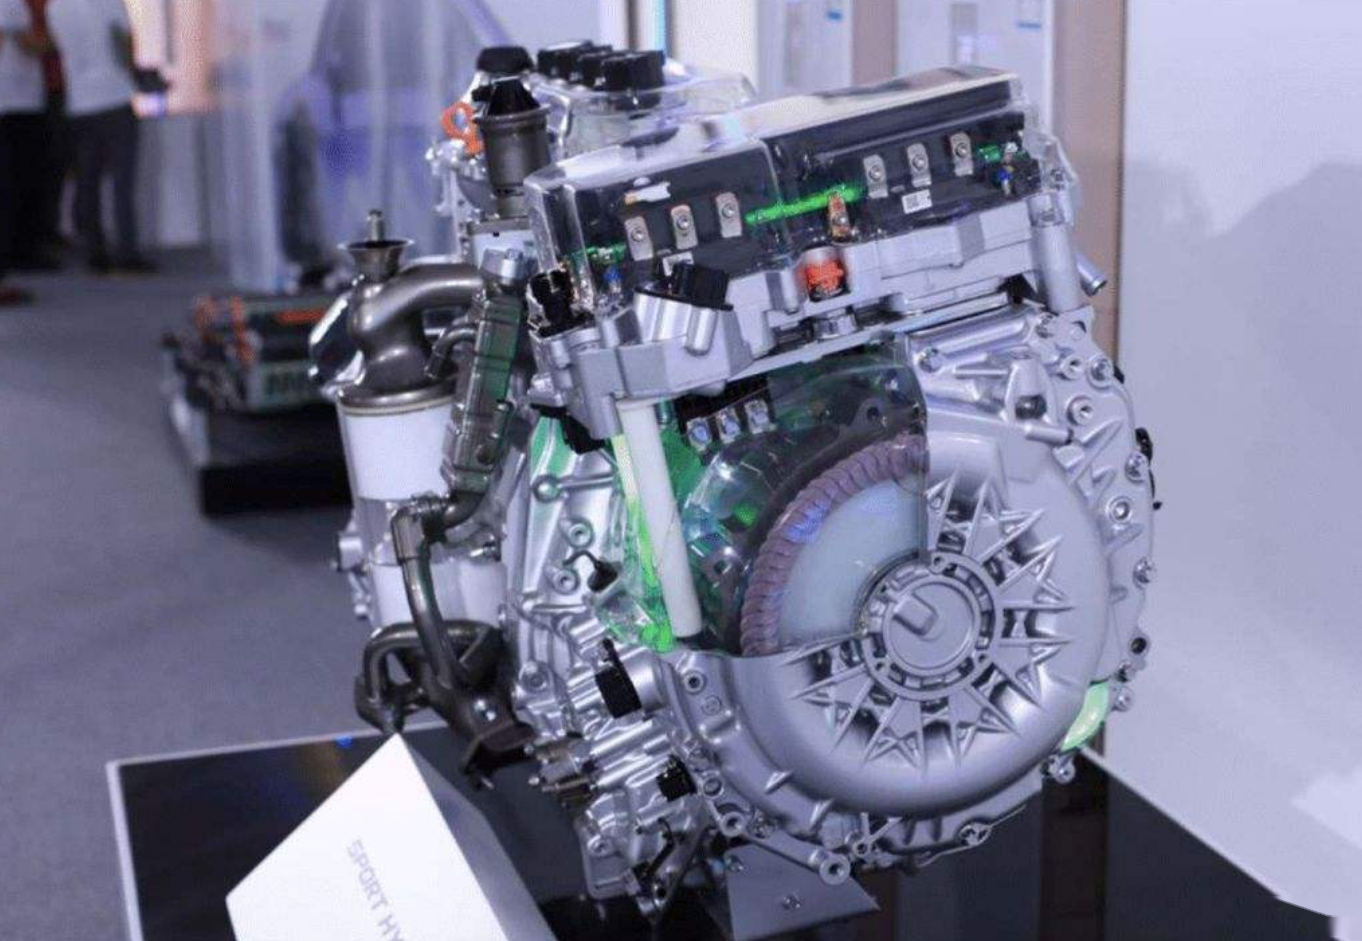 阿特金森循环发动机对比普通发动机,究竟有哪些优点?